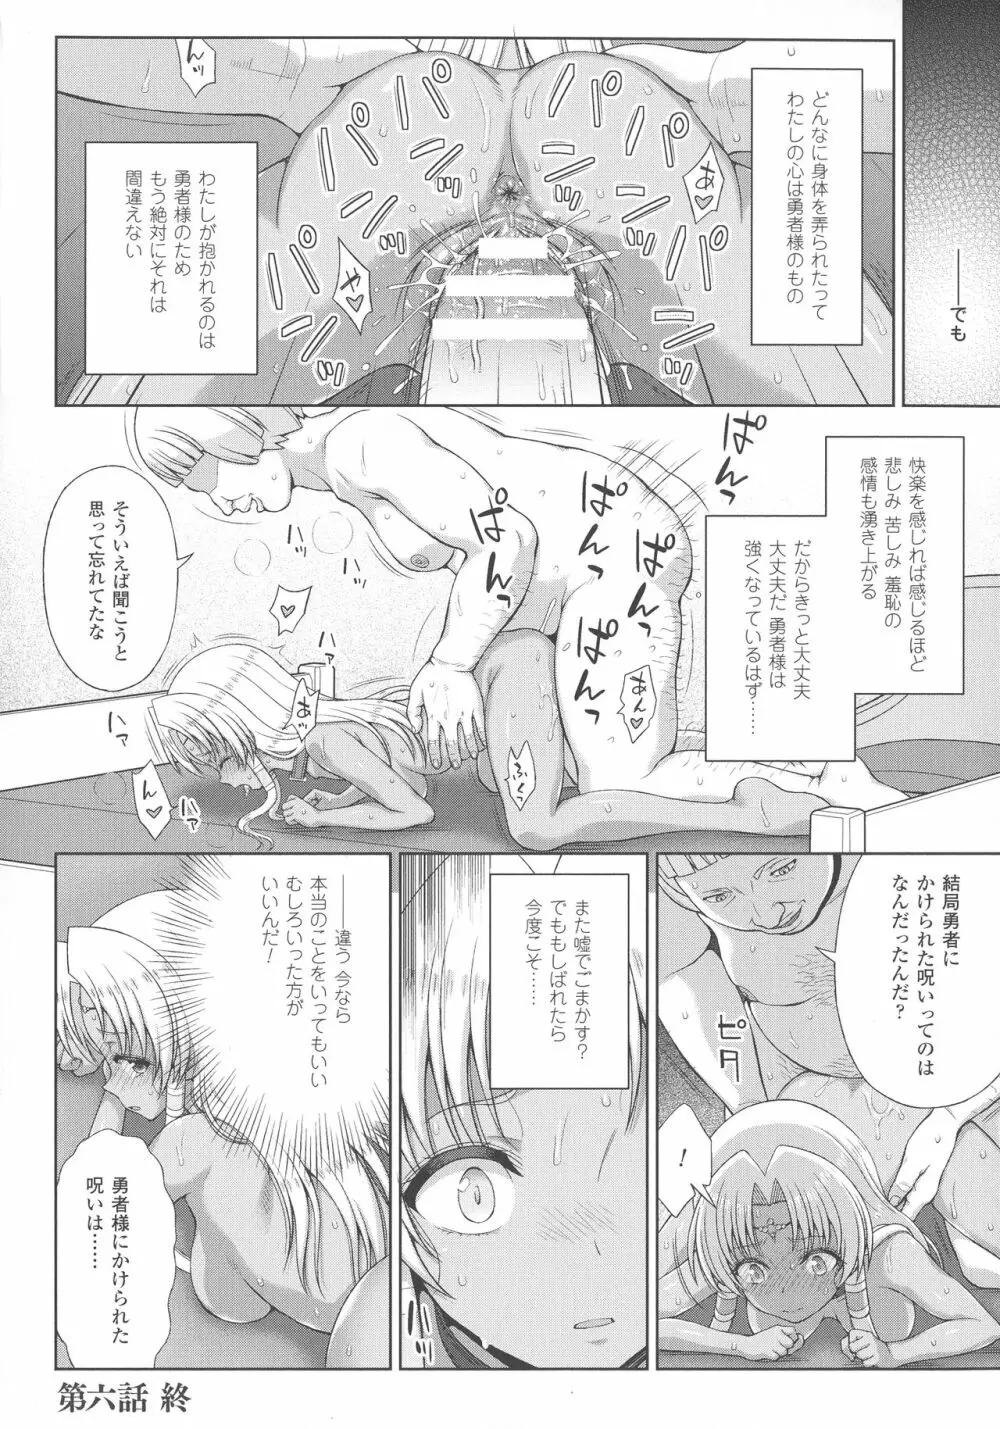 敗北乙女エクスタシー SP3 52ページ